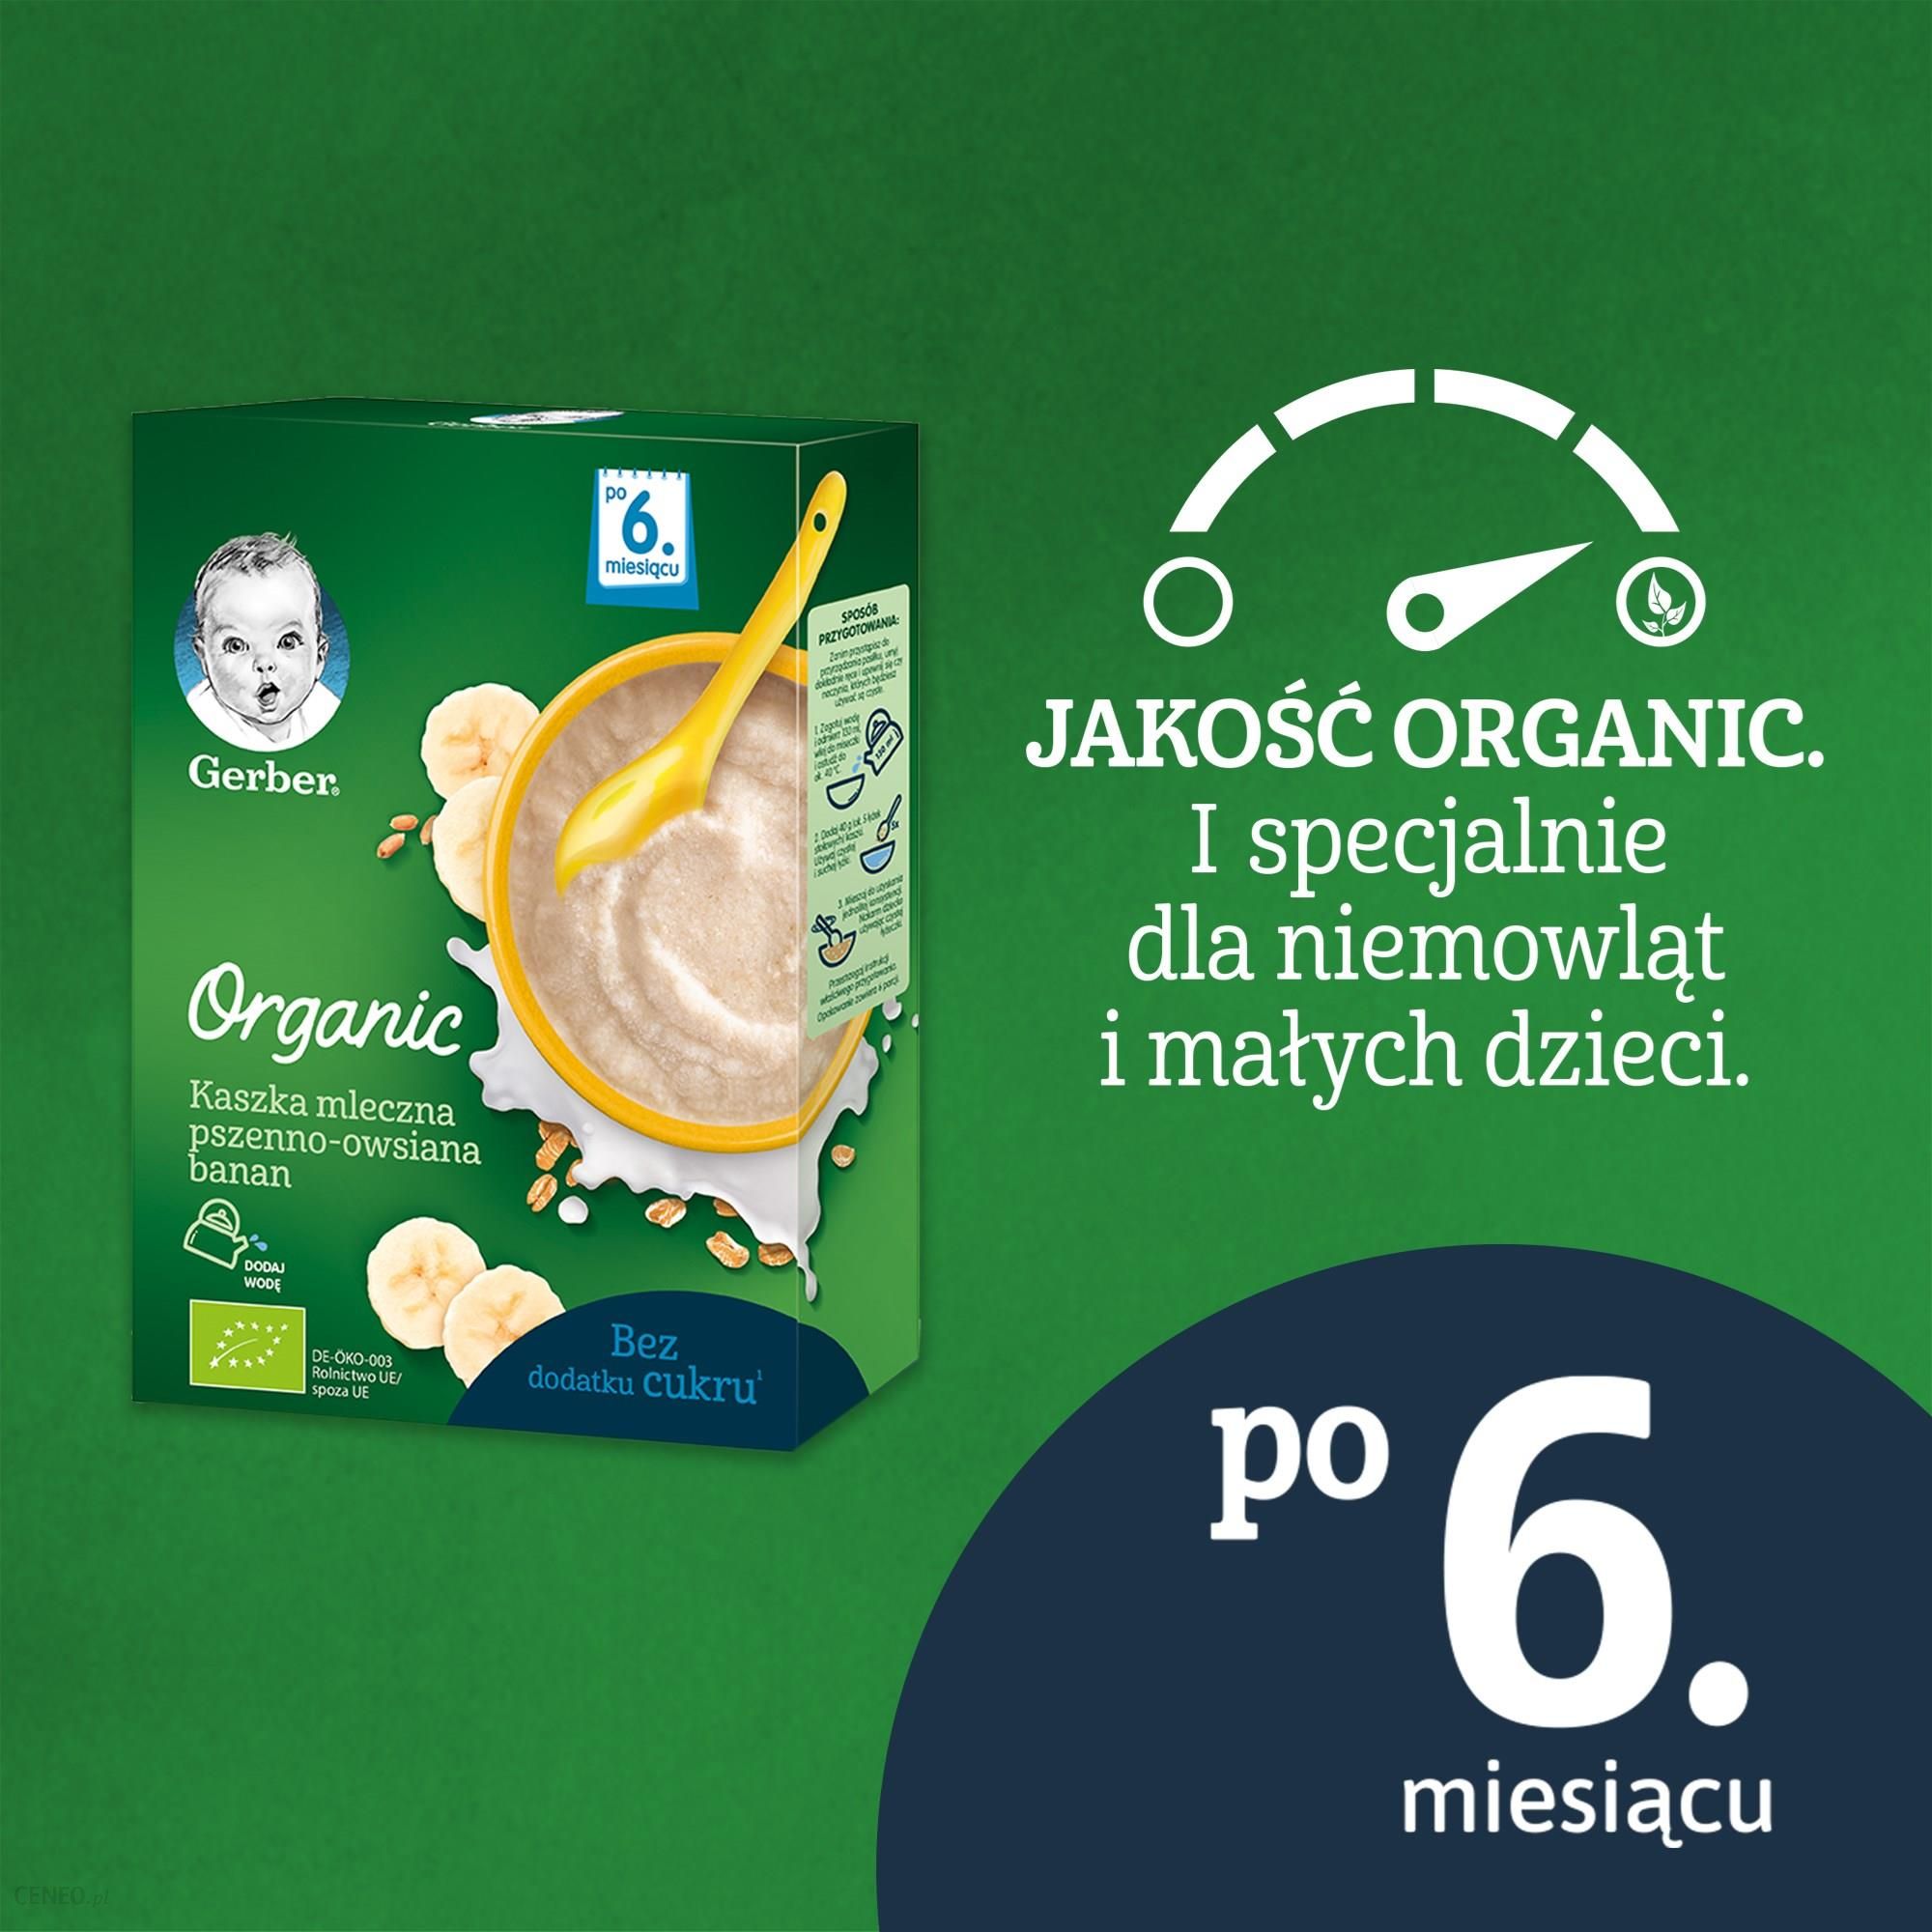 Gerber Organic Kaszka Mleczna Pszenno Owsiana Banan dla niemowląt po 6 Miesiącu 240g